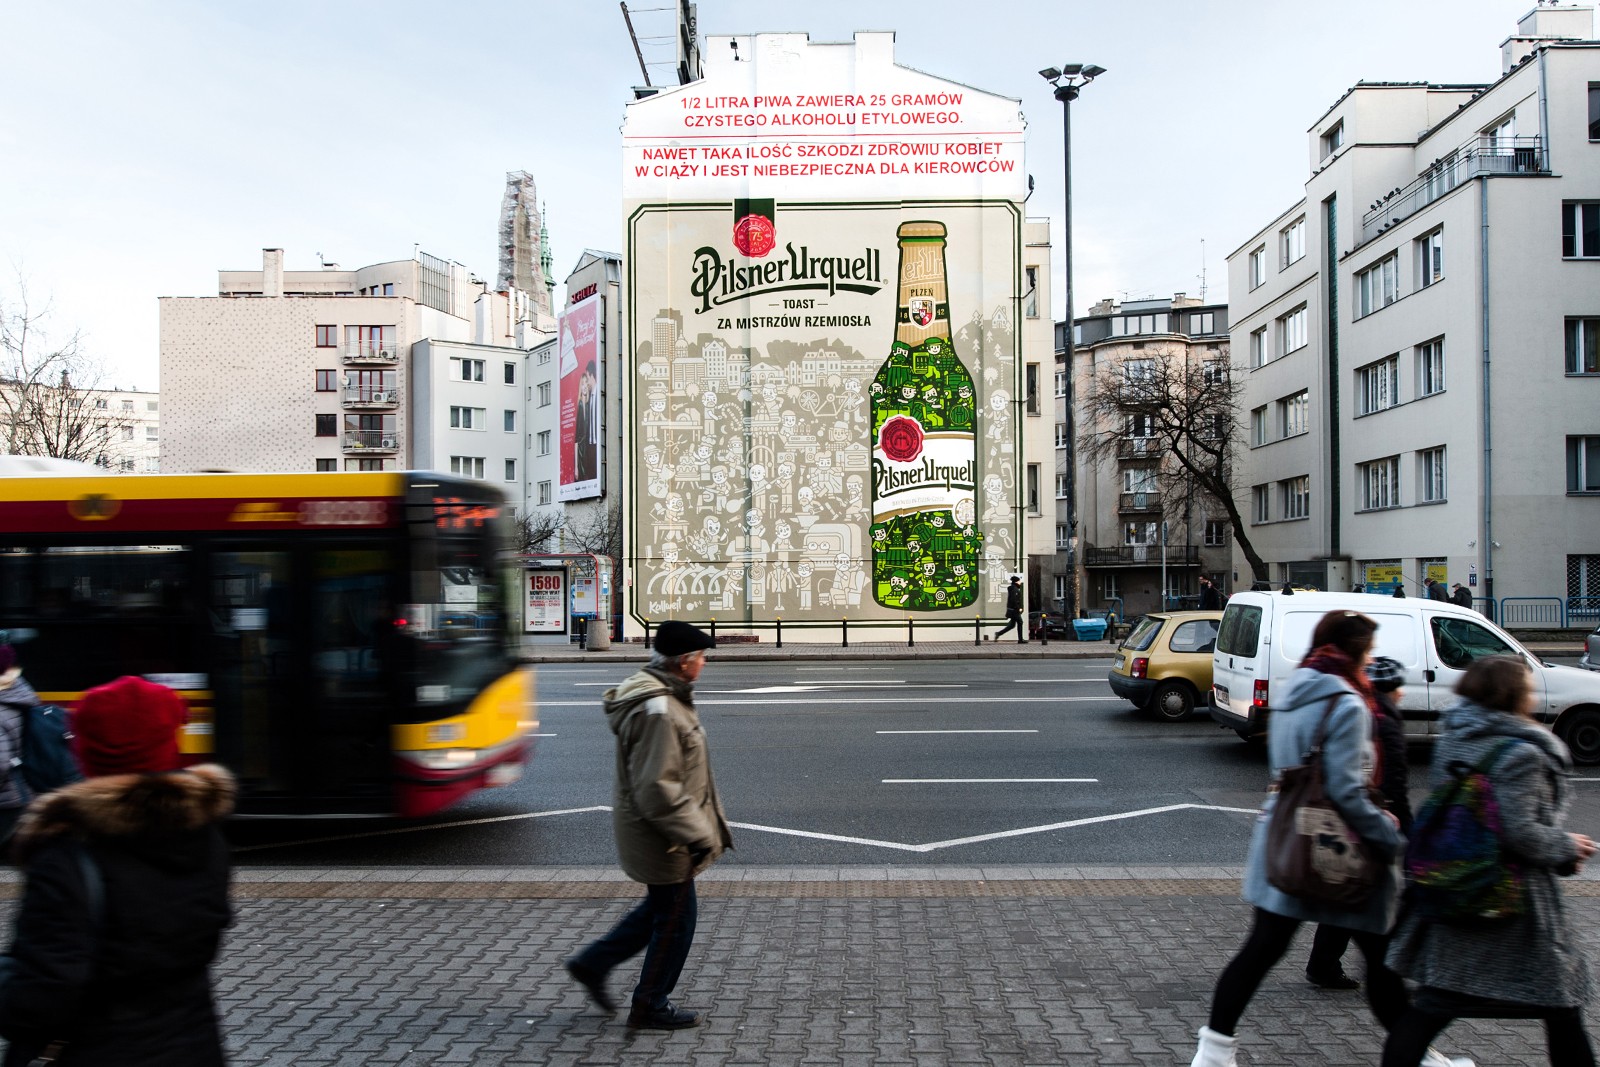 Werbung des Bieres Pilsner Urquell in Warschau an der U-Bahn-Station Politechnika in der Jaworzyńska-Straße | Pilsner Urquell | Portfolio